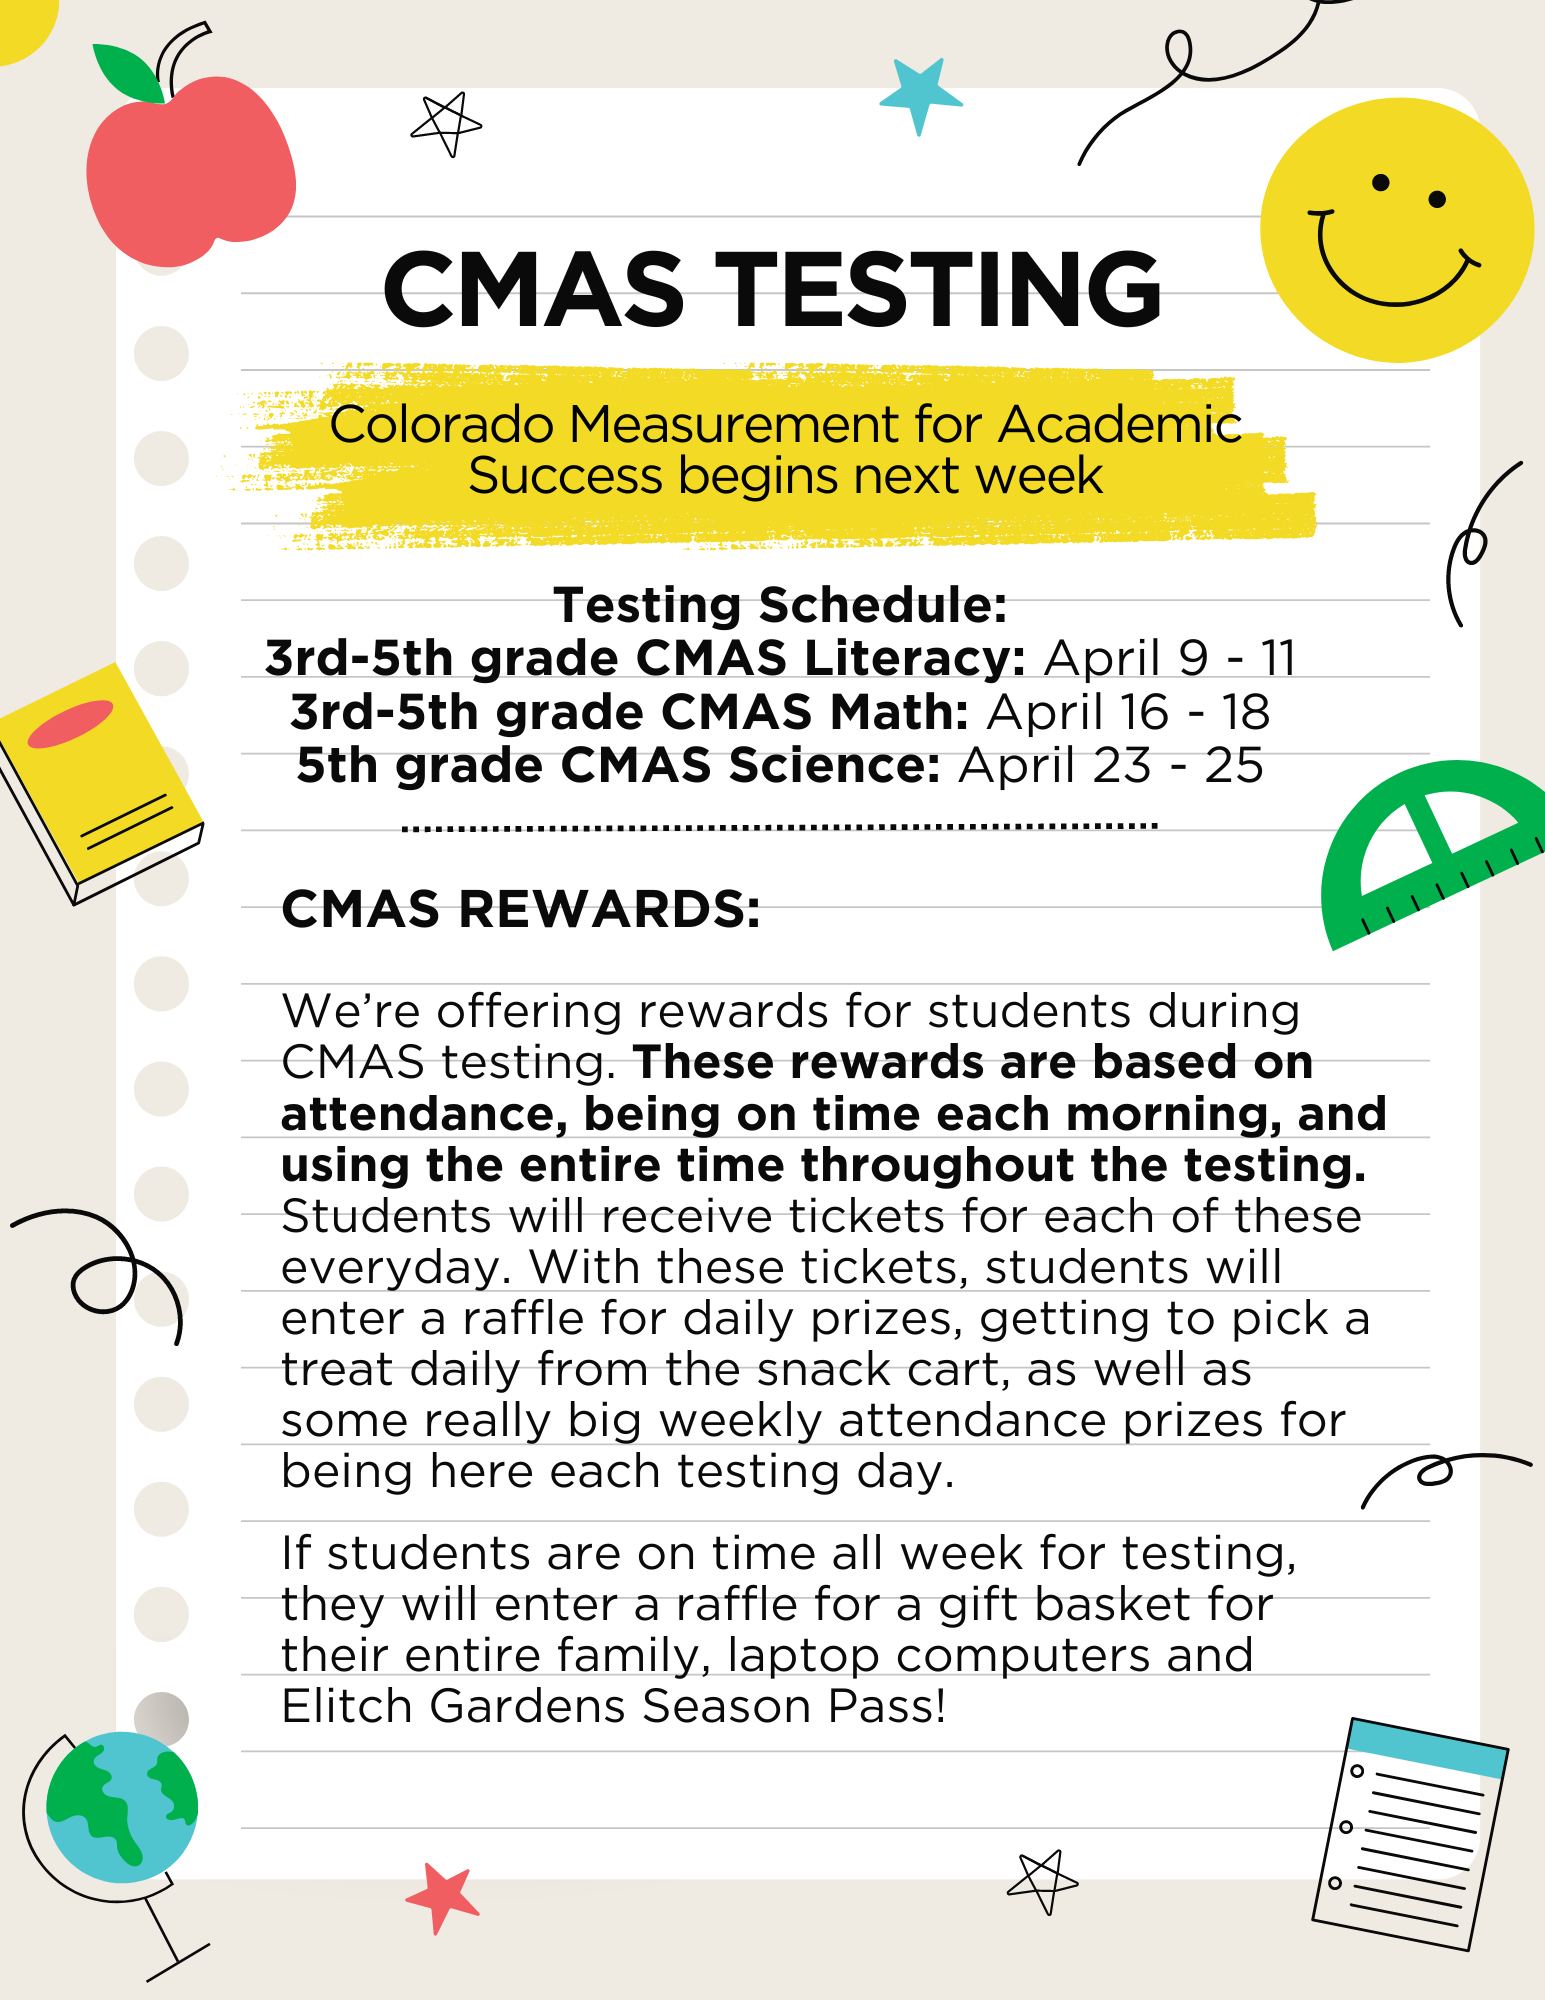 CMAS Testing Begins April 9